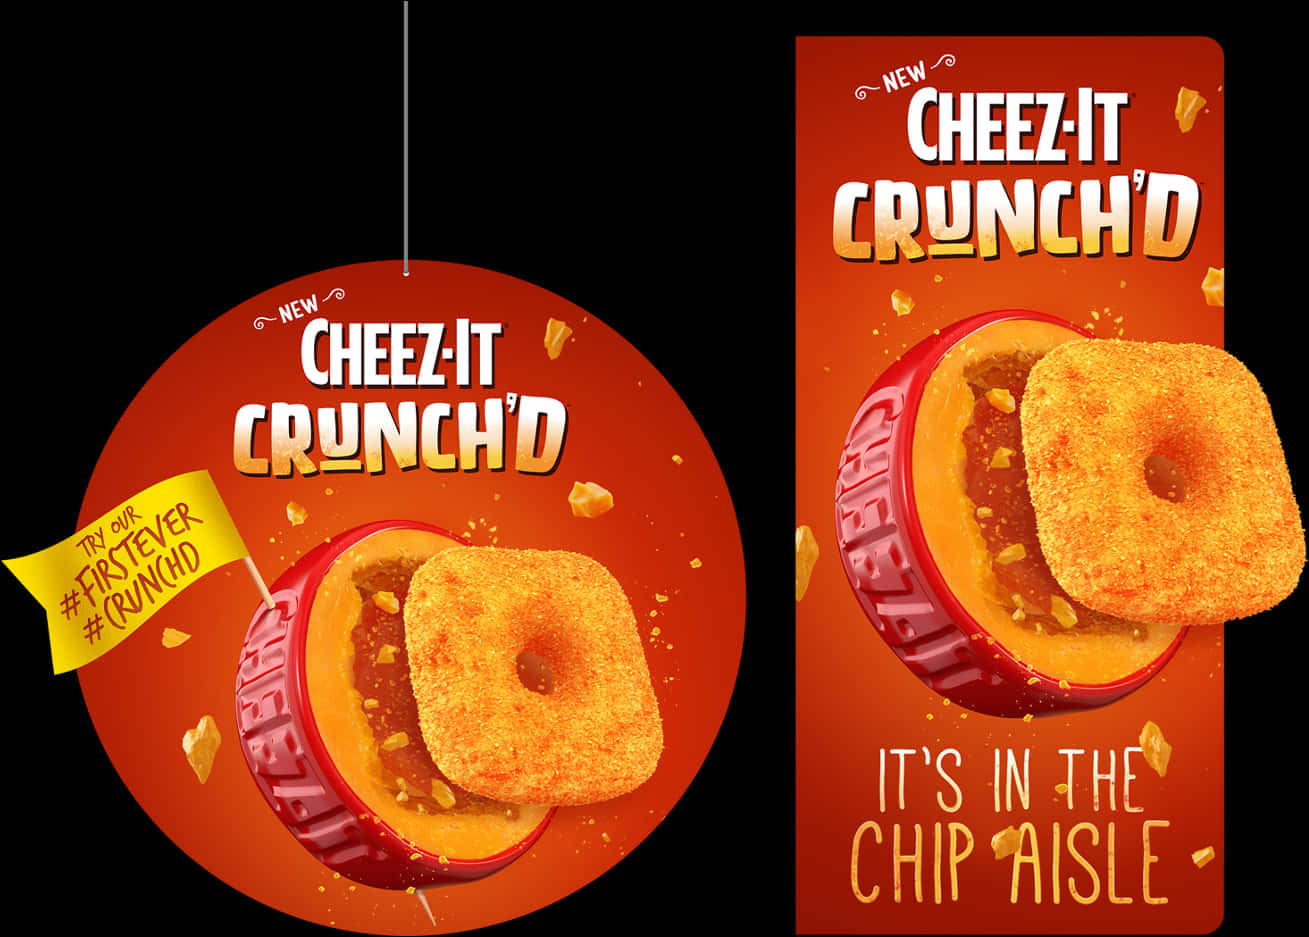 Cheez It Crunchd Advertisement